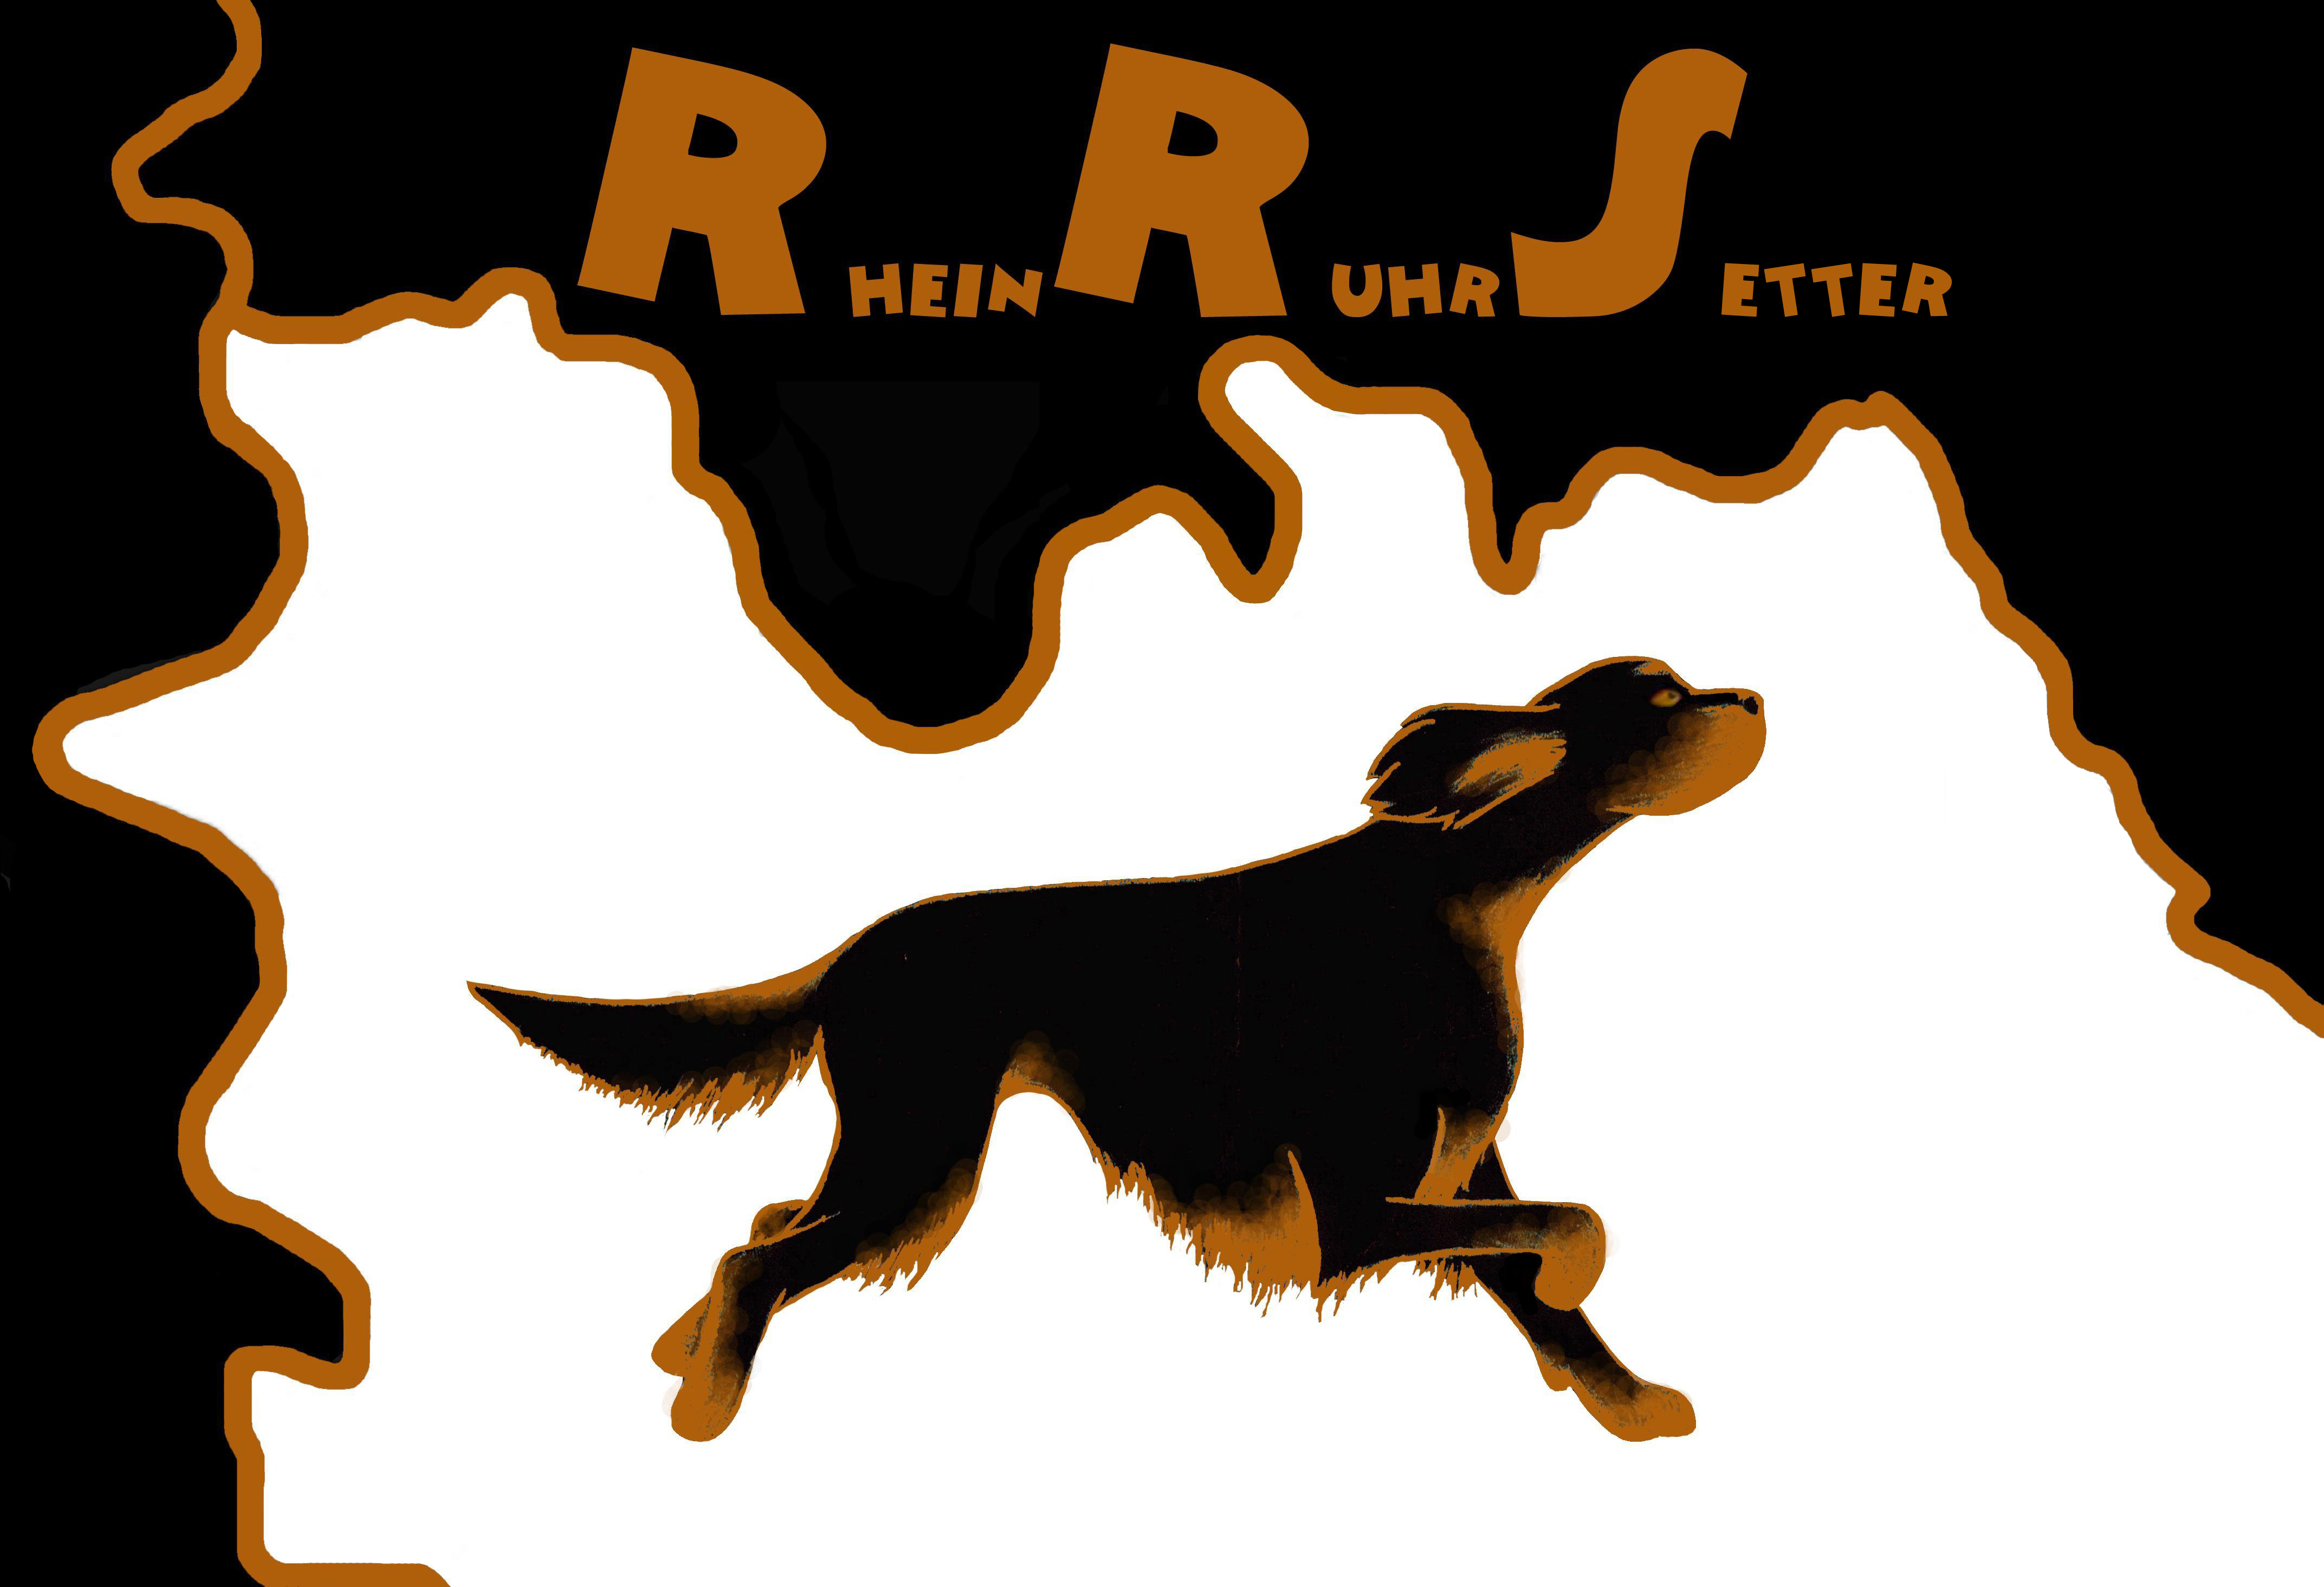 RheinRuhrSetter Logo